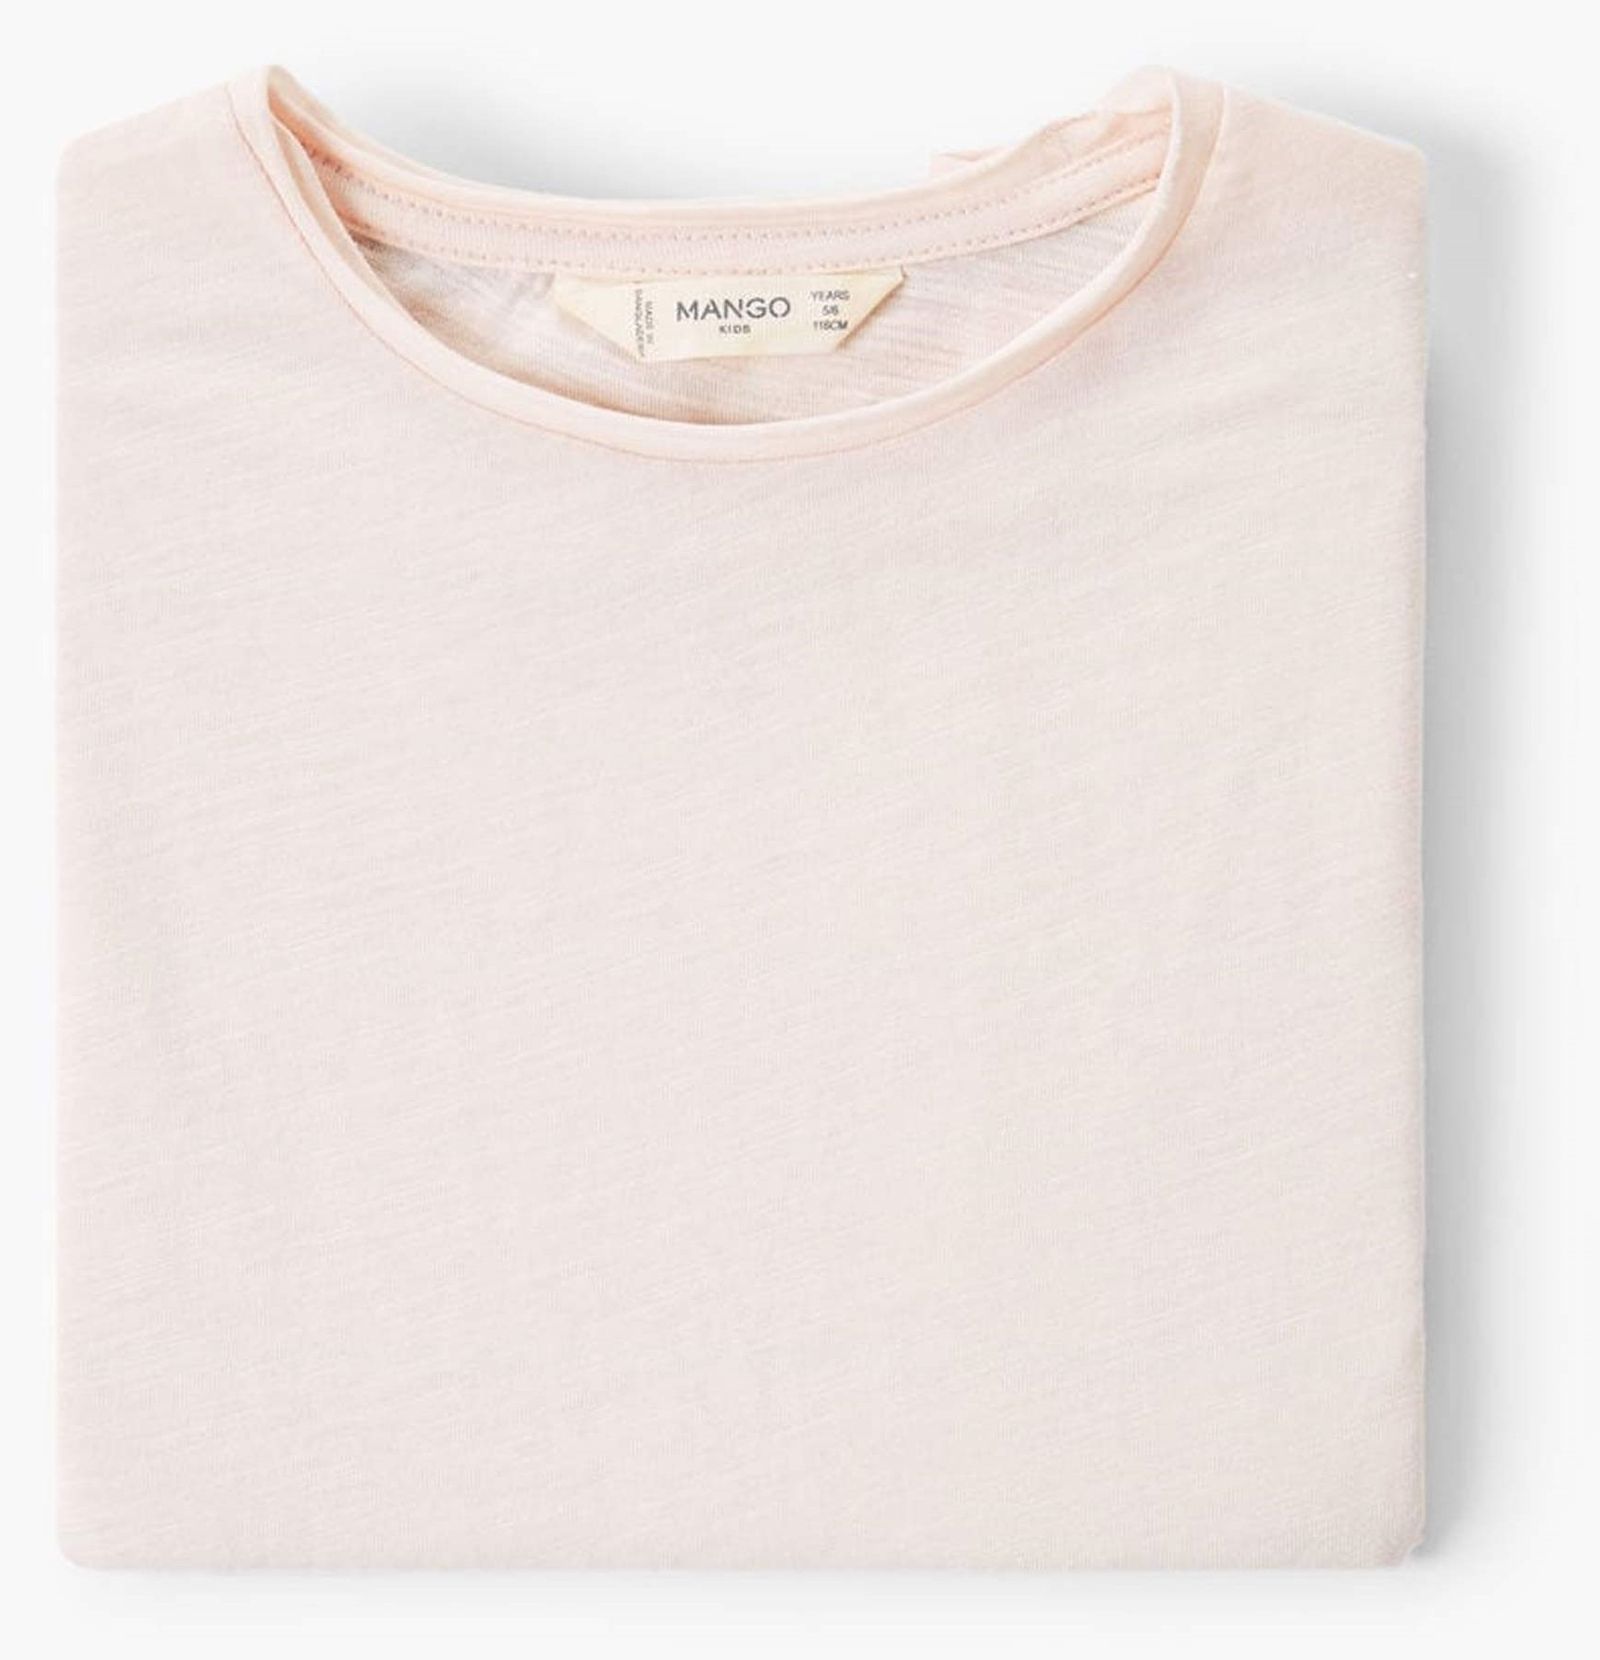 تی شرت نخی یقه گرد دخترانه - مانگو - صورتي  - 6